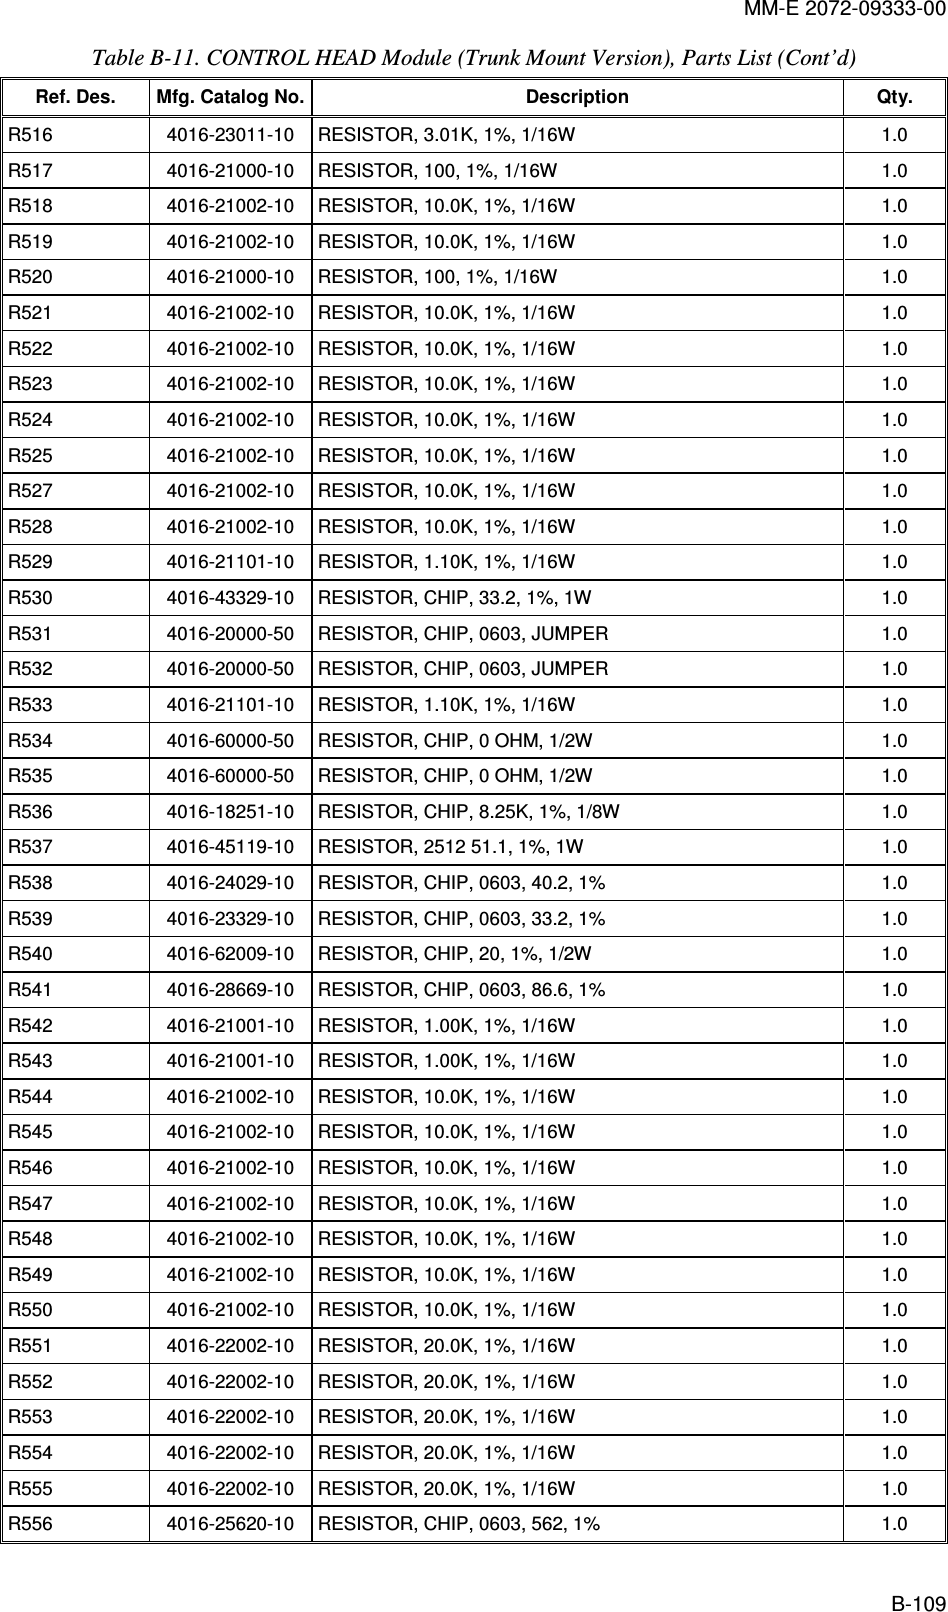 MM-E 2072-09333-00 B-109 Table  B-11. CONTROL HEAD Module (Trunk Mount Version), Parts List (Cont’d)  Ref. Des.  Mfg. Catalog No. Description  Qty. R516   4016-23011-10   RESISTOR, 3.01K, 1%, 1/16W  1.0  R517   4016-21000-10   RESISTOR, 100, 1%, 1/16W  1.0  R518   4016-21002-10   RESISTOR, 10.0K, 1%, 1/16W  1.0  R519   4016-21002-10   RESISTOR, 10.0K, 1%, 1/16W  1.0  R520   4016-21000-10   RESISTOR, 100, 1%, 1/16W  1.0  R521   4016-21002-10   RESISTOR, 10.0K, 1%, 1/16W  1.0  R522   4016-21002-10   RESISTOR, 10.0K, 1%, 1/16W  1.0  R523   4016-21002-10   RESISTOR, 10.0K, 1%, 1/16W  1.0  R524   4016-21002-10   RESISTOR, 10.0K, 1%, 1/16W  1.0  R525   4016-21002-10   RESISTOR, 10.0K, 1%, 1/16W  1.0  R527   4016-21002-10   RESISTOR, 10.0K, 1%, 1/16W  1.0  R528   4016-21002-10   RESISTOR, 10.0K, 1%, 1/16W  1.0  R529   4016-21101-10   RESISTOR, 1.10K, 1%, 1/16W  1.0  R530   4016-43329-10   RESISTOR, CHIP, 33.2, 1%, 1W  1.0  R531   4016-20000-50   RESISTOR, CHIP, 0603, JUMPER  1.0  R532   4016-20000-50   RESISTOR, CHIP, 0603, JUMPER  1.0  R533   4016-21101-10   RESISTOR, 1.10K, 1%, 1/16W  1.0  R534   4016-60000-50   RESISTOR, CHIP, 0 OHM, 1/2W  1.0  R535   4016-60000-50   RESISTOR, CHIP, 0 OHM, 1/2W  1.0  R536   4016-18251-10   RESISTOR, CHIP, 8.25K, 1%, 1/8W  1.0  R537   4016-45119-10   RESISTOR, 2512 51.1, 1%, 1W  1.0  R538   4016-24029-10   RESISTOR, CHIP, 0603, 40.2, 1%  1.0  R539   4016-23329-10   RESISTOR, CHIP, 0603, 33.2, 1%  1.0  R540   4016-62009-10   RESISTOR, CHIP, 20, 1%, 1/2W  1.0  R541   4016-28669-10   RESISTOR, CHIP, 0603, 86.6, 1%  1.0  R542   4016-21001-10   RESISTOR, 1.00K, 1%, 1/16W  1.0  R543   4016-21001-10   RESISTOR, 1.00K, 1%, 1/16W  1.0  R544   4016-21002-10   RESISTOR, 10.0K, 1%, 1/16W  1.0  R545   4016-21002-10   RESISTOR, 10.0K, 1%, 1/16W  1.0  R546   4016-21002-10   RESISTOR, 10.0K, 1%, 1/16W  1.0  R547   4016-21002-10   RESISTOR, 10.0K, 1%, 1/16W  1.0  R548   4016-21002-10   RESISTOR, 10.0K, 1%, 1/16W  1.0  R549   4016-21002-10   RESISTOR, 10.0K, 1%, 1/16W  1.0  R550   4016-21002-10   RESISTOR, 10.0K, 1%, 1/16W  1.0  R551   4016-22002-10   RESISTOR, 20.0K, 1%, 1/16W  1.0  R552   4016-22002-10   RESISTOR, 20.0K, 1%, 1/16W  1.0  R553   4016-22002-10   RESISTOR, 20.0K, 1%, 1/16W  1.0  R554   4016-22002-10   RESISTOR, 20.0K, 1%, 1/16W  1.0  R555   4016-22002-10   RESISTOR, 20.0K, 1%, 1/16W  1.0  R556   4016-25620-10   RESISTOR, CHIP, 0603, 562, 1%  1.0  